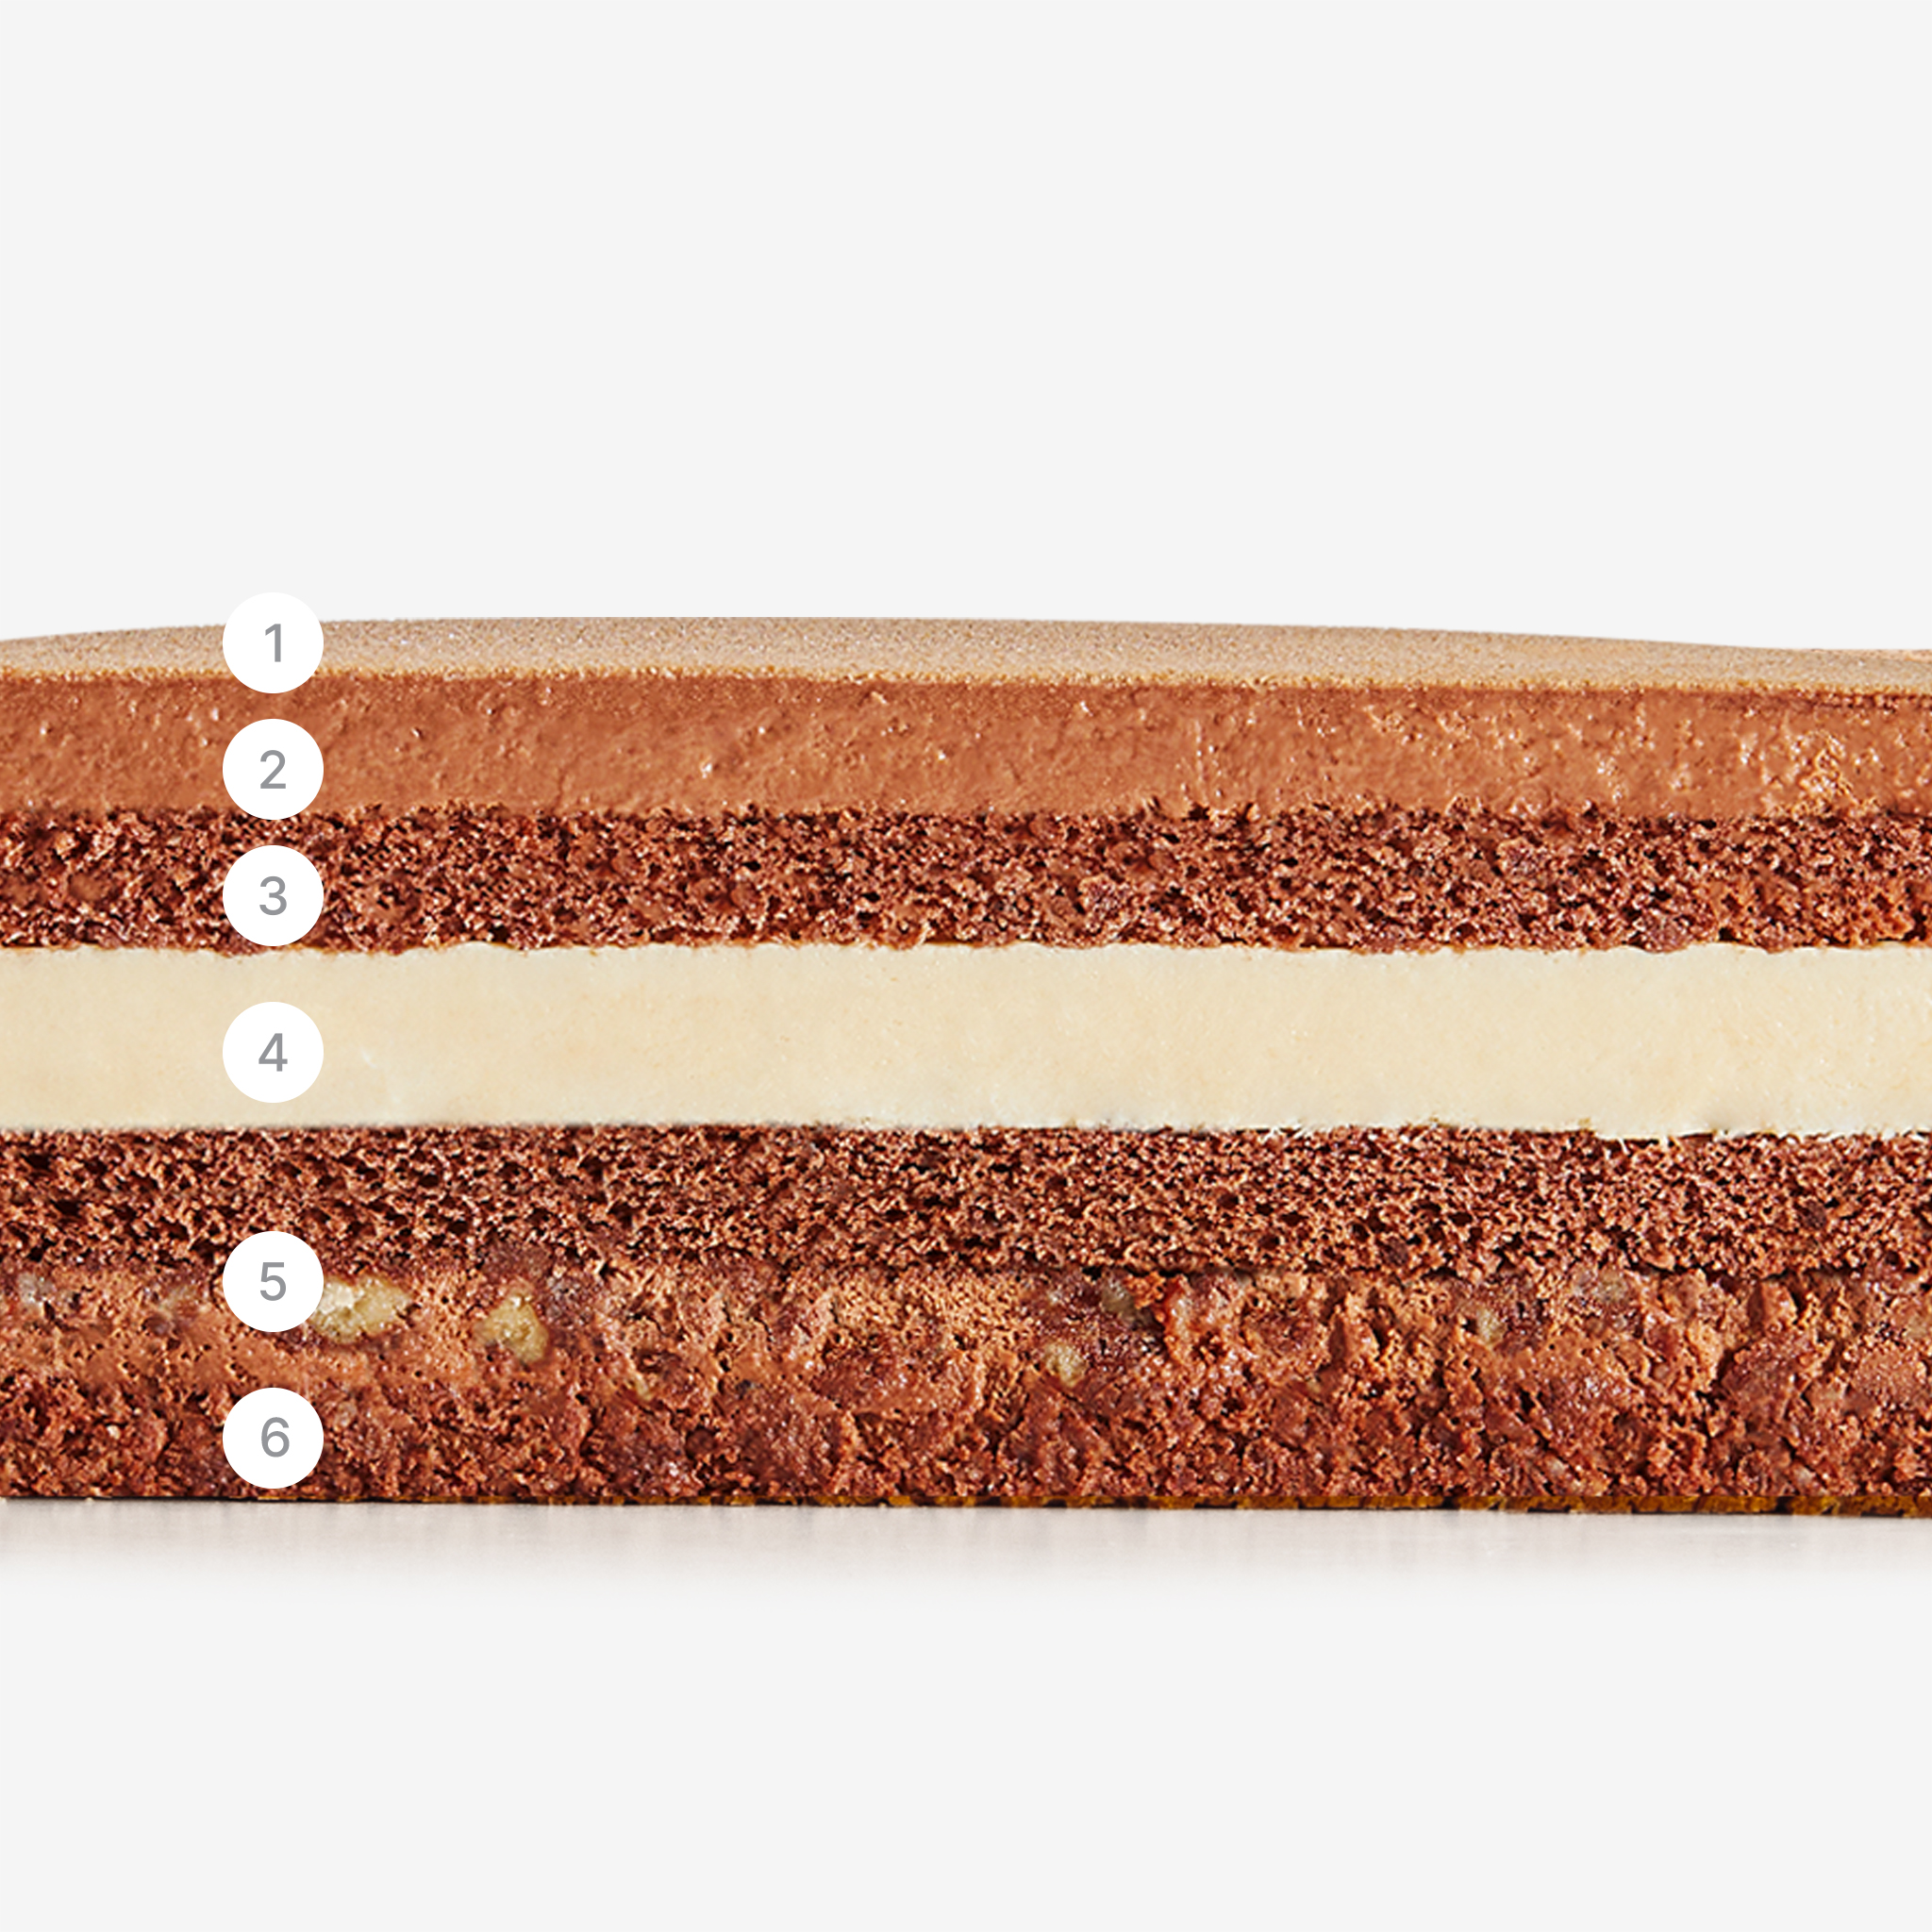 LaFuong Pastry – Ivory Noir – Sô-cô-la & Vani. Trở về với những hương vị quen thuộc nhất, “với phiên bản nâng cấp” là chủ đề mà LaFuong muốn gửi tới các bạn qua chiếc bánh này – Ivory Noir. Chiếc bánh có vị Sô-cô-la & Vani, một sự kết hợp hương vị đầy cổ điển, vừa độc đáo lại vừa phổ biến trong ẩm thực.. Bắt đầu với lớp mousse được làm từ sô-cô-la nguyên chất, đi kèm lớp bạt sô-cô-la đen bông mềm, kết hợp lớp kem ngậy làm từ quả vani Madagascar cao cấp, thêm chút giòn giòn của bánh quy hạnh nhân bọc sô-cô-la. Khi kết hợp cùng nhau, tất cả tạo nên một sự cân bằng hoàn hảo, một hương vị đậm đà, phức tạp và hấp dẫn.